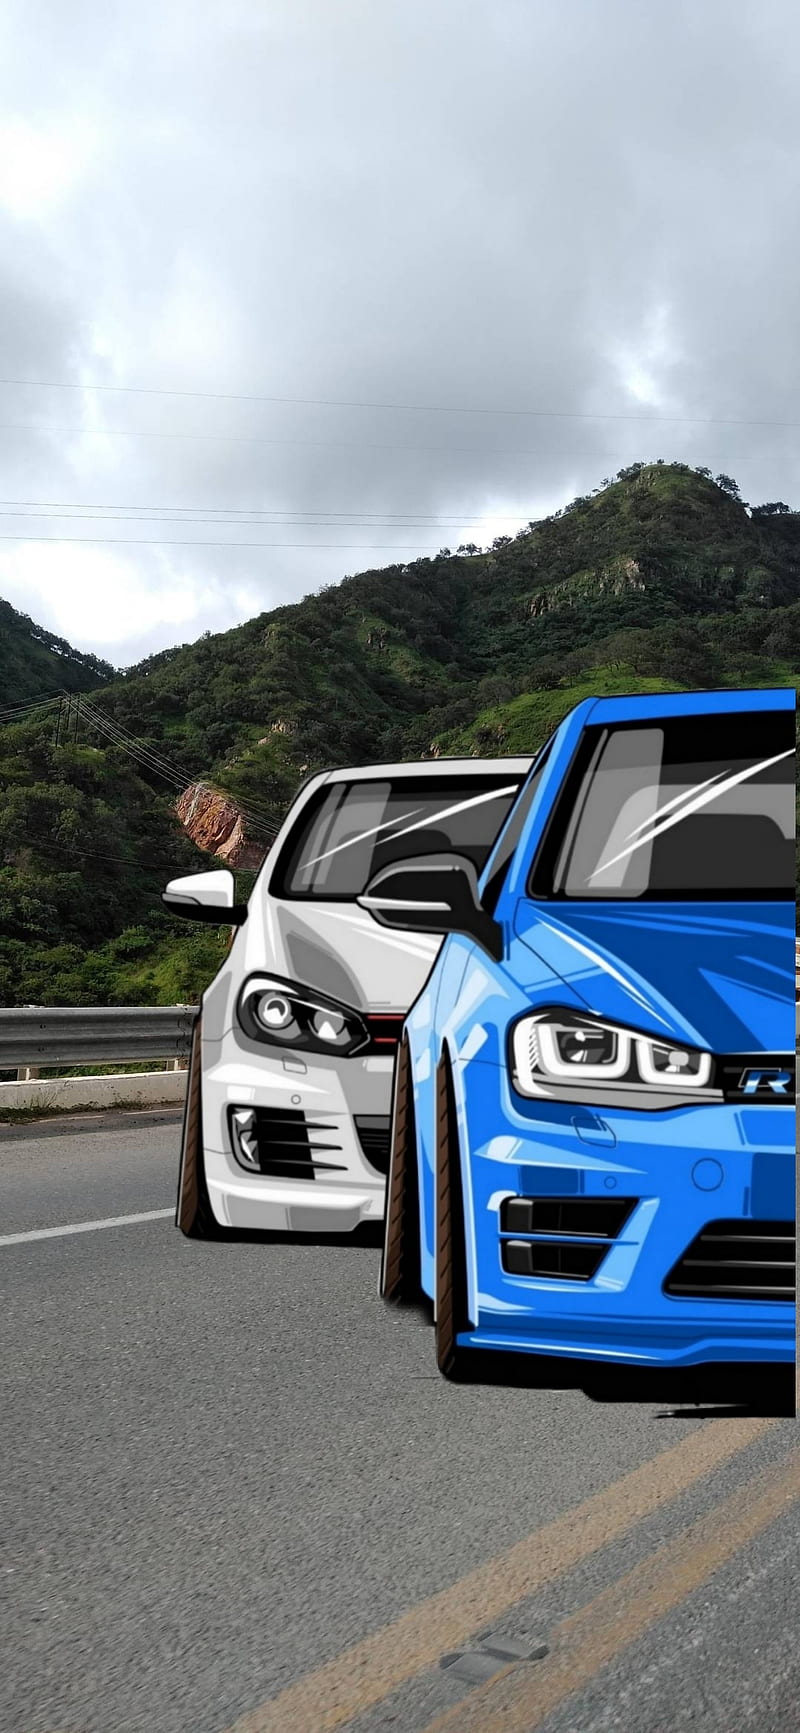 Volkswagen Golf, alemania, blue, car, carros, mk6, mk7, volkswagen golf mk6, volkswagen golf mk7, HD phone wallpaper